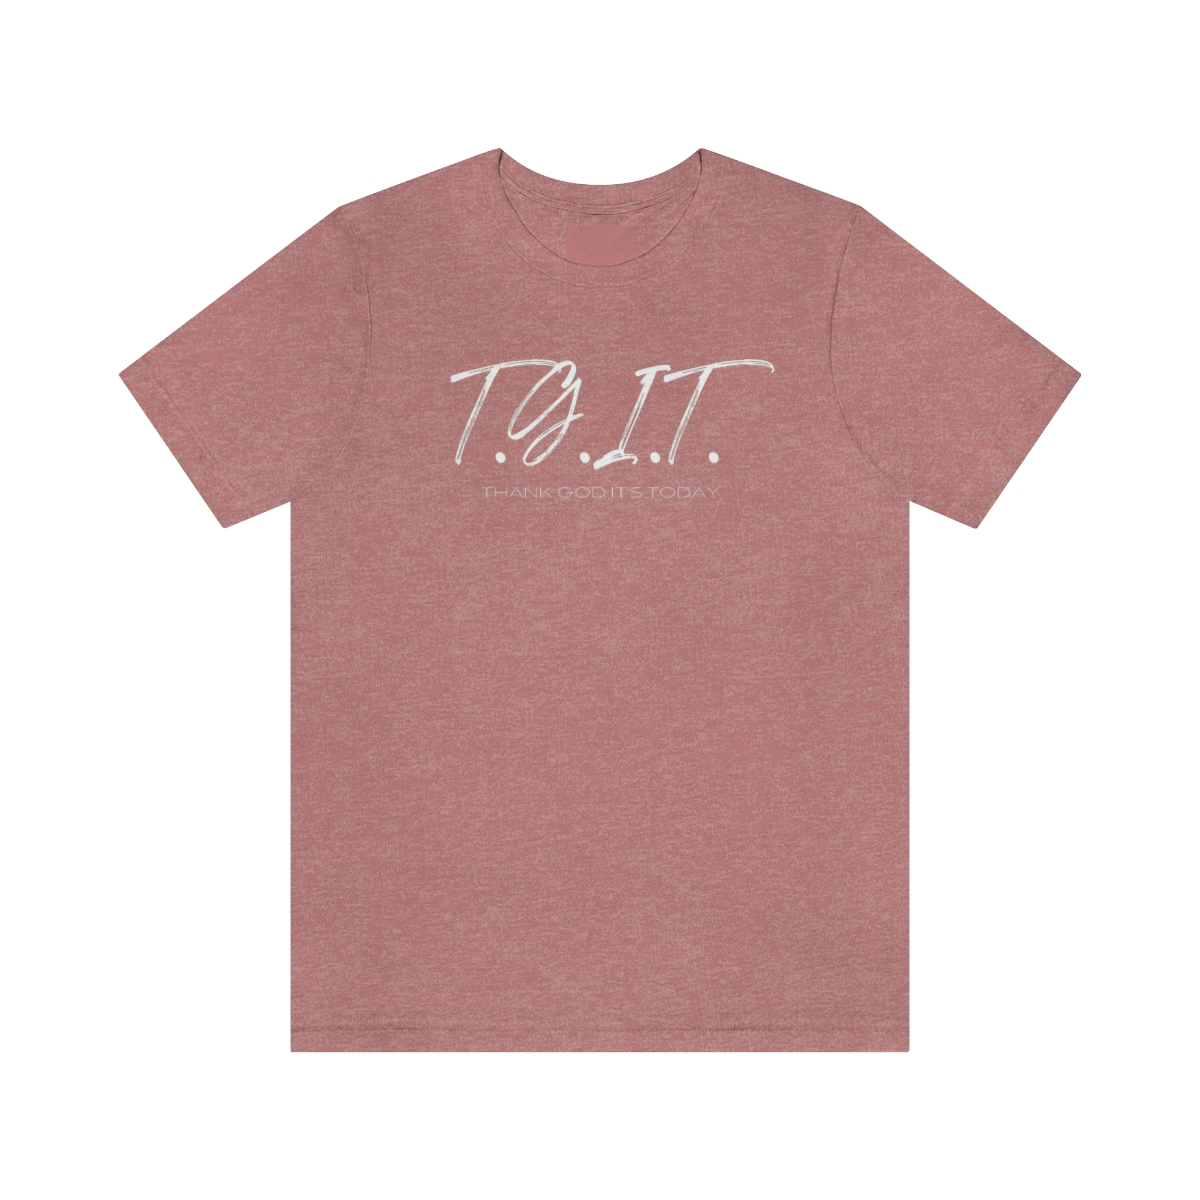 T.G.I.T script shirt